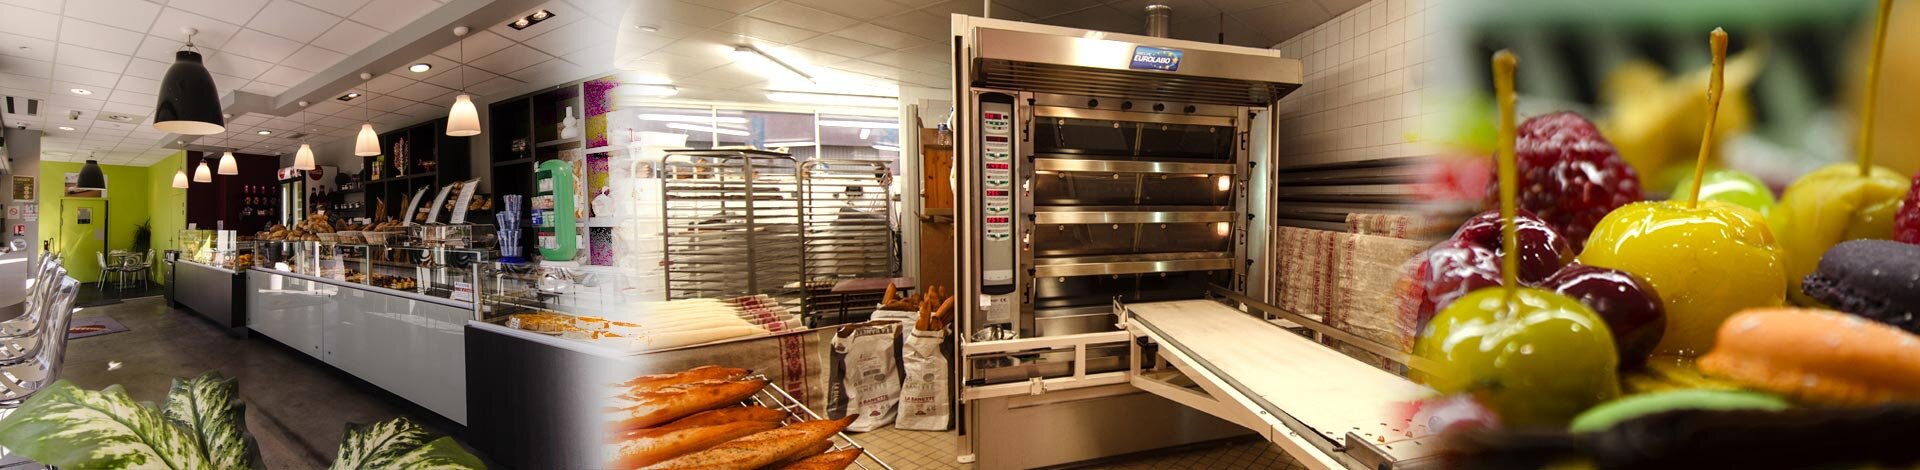 Laboratoire de pâtisserie : Normes, agencement, équipements